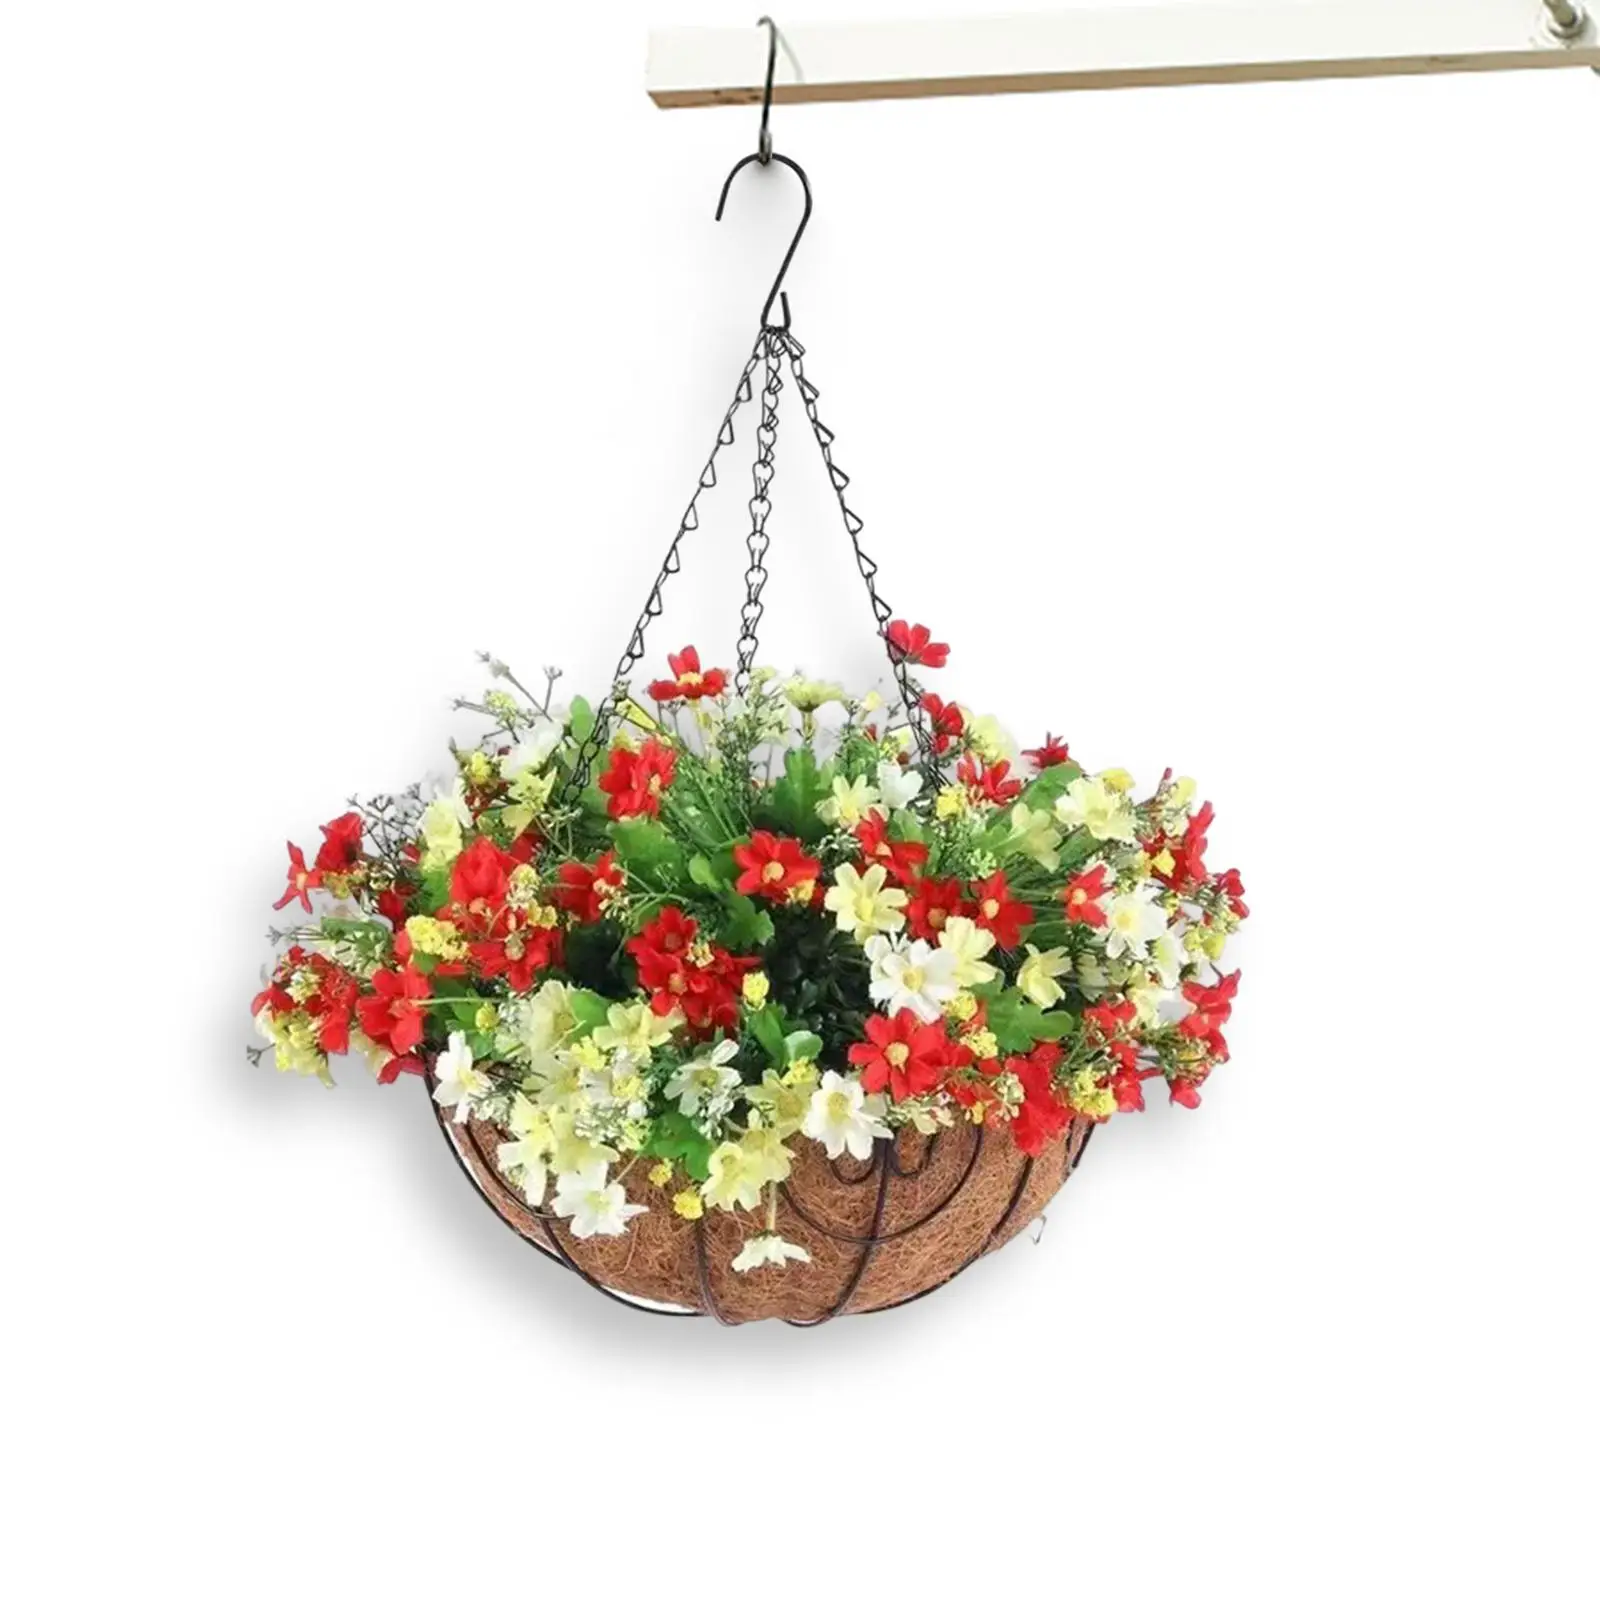 Artificial Flowers in Hanging Basket Plants Ornament Flowerpot Porch Pot Hanger for Outdoor Indoor Lawn Balcony Garden Home